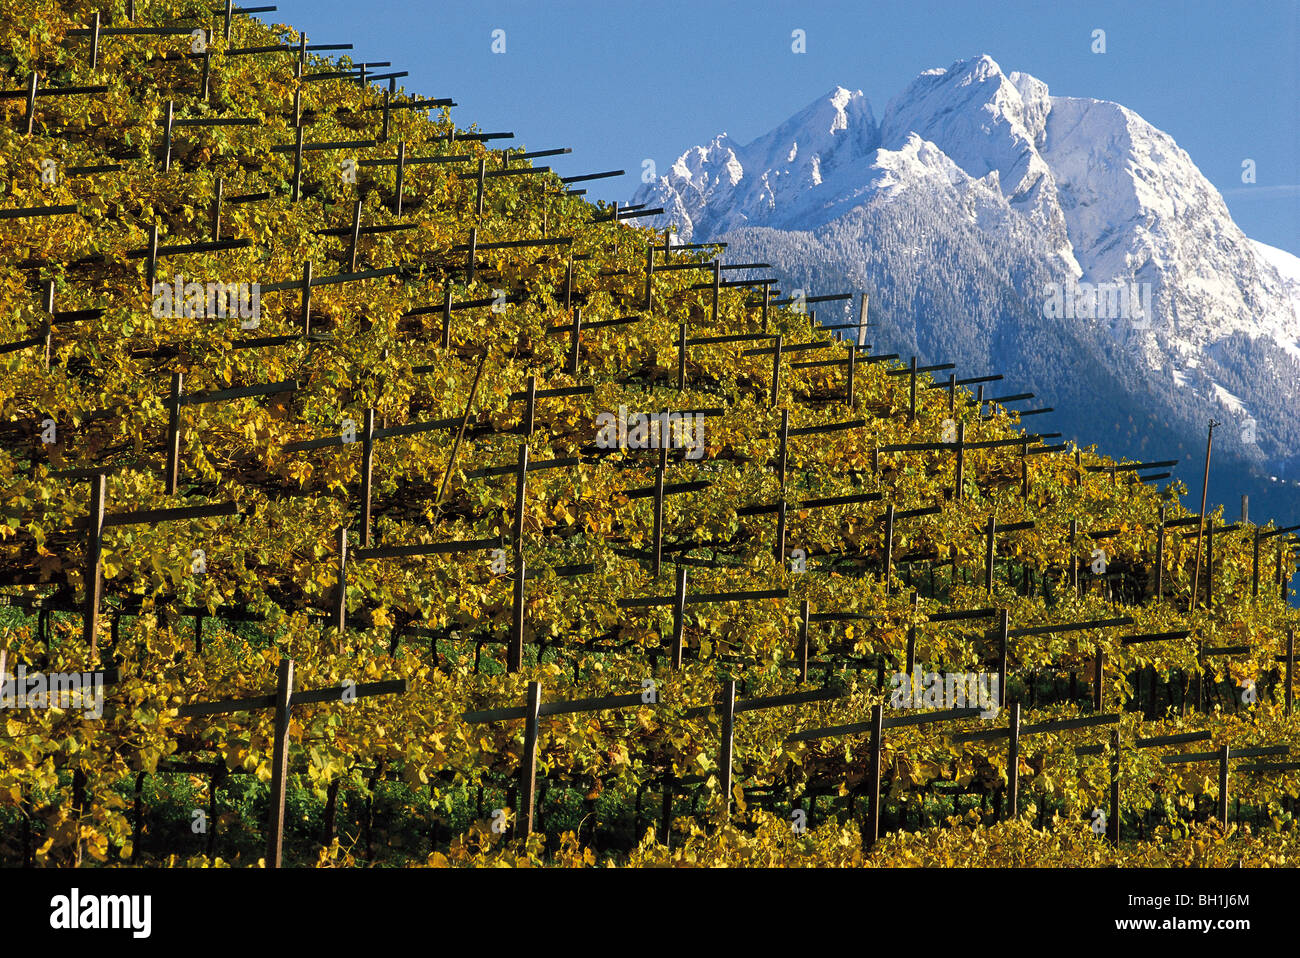 Vigne e vigne, Cermes, Ifinger Mountain in background, Alto Adige, Italia Foto Stock